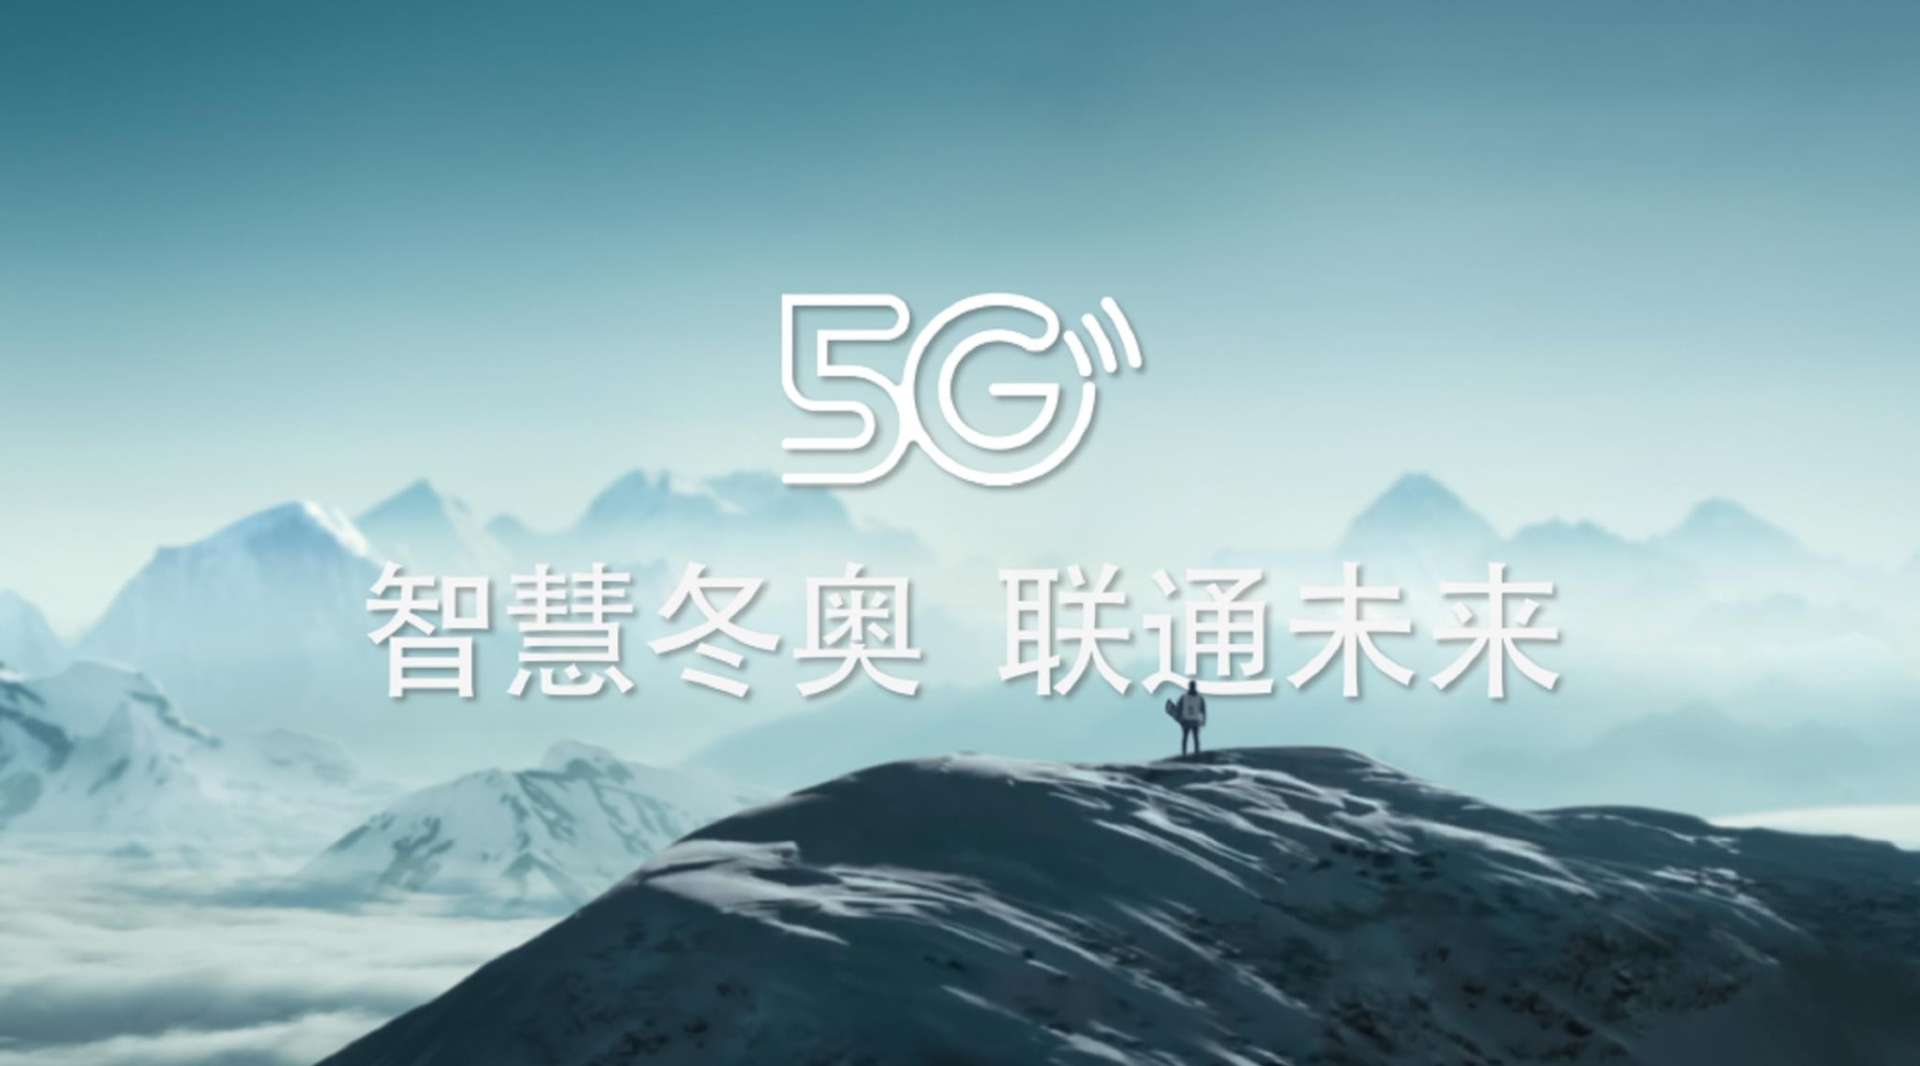 联通5G“智慧冬奥，联通未来”